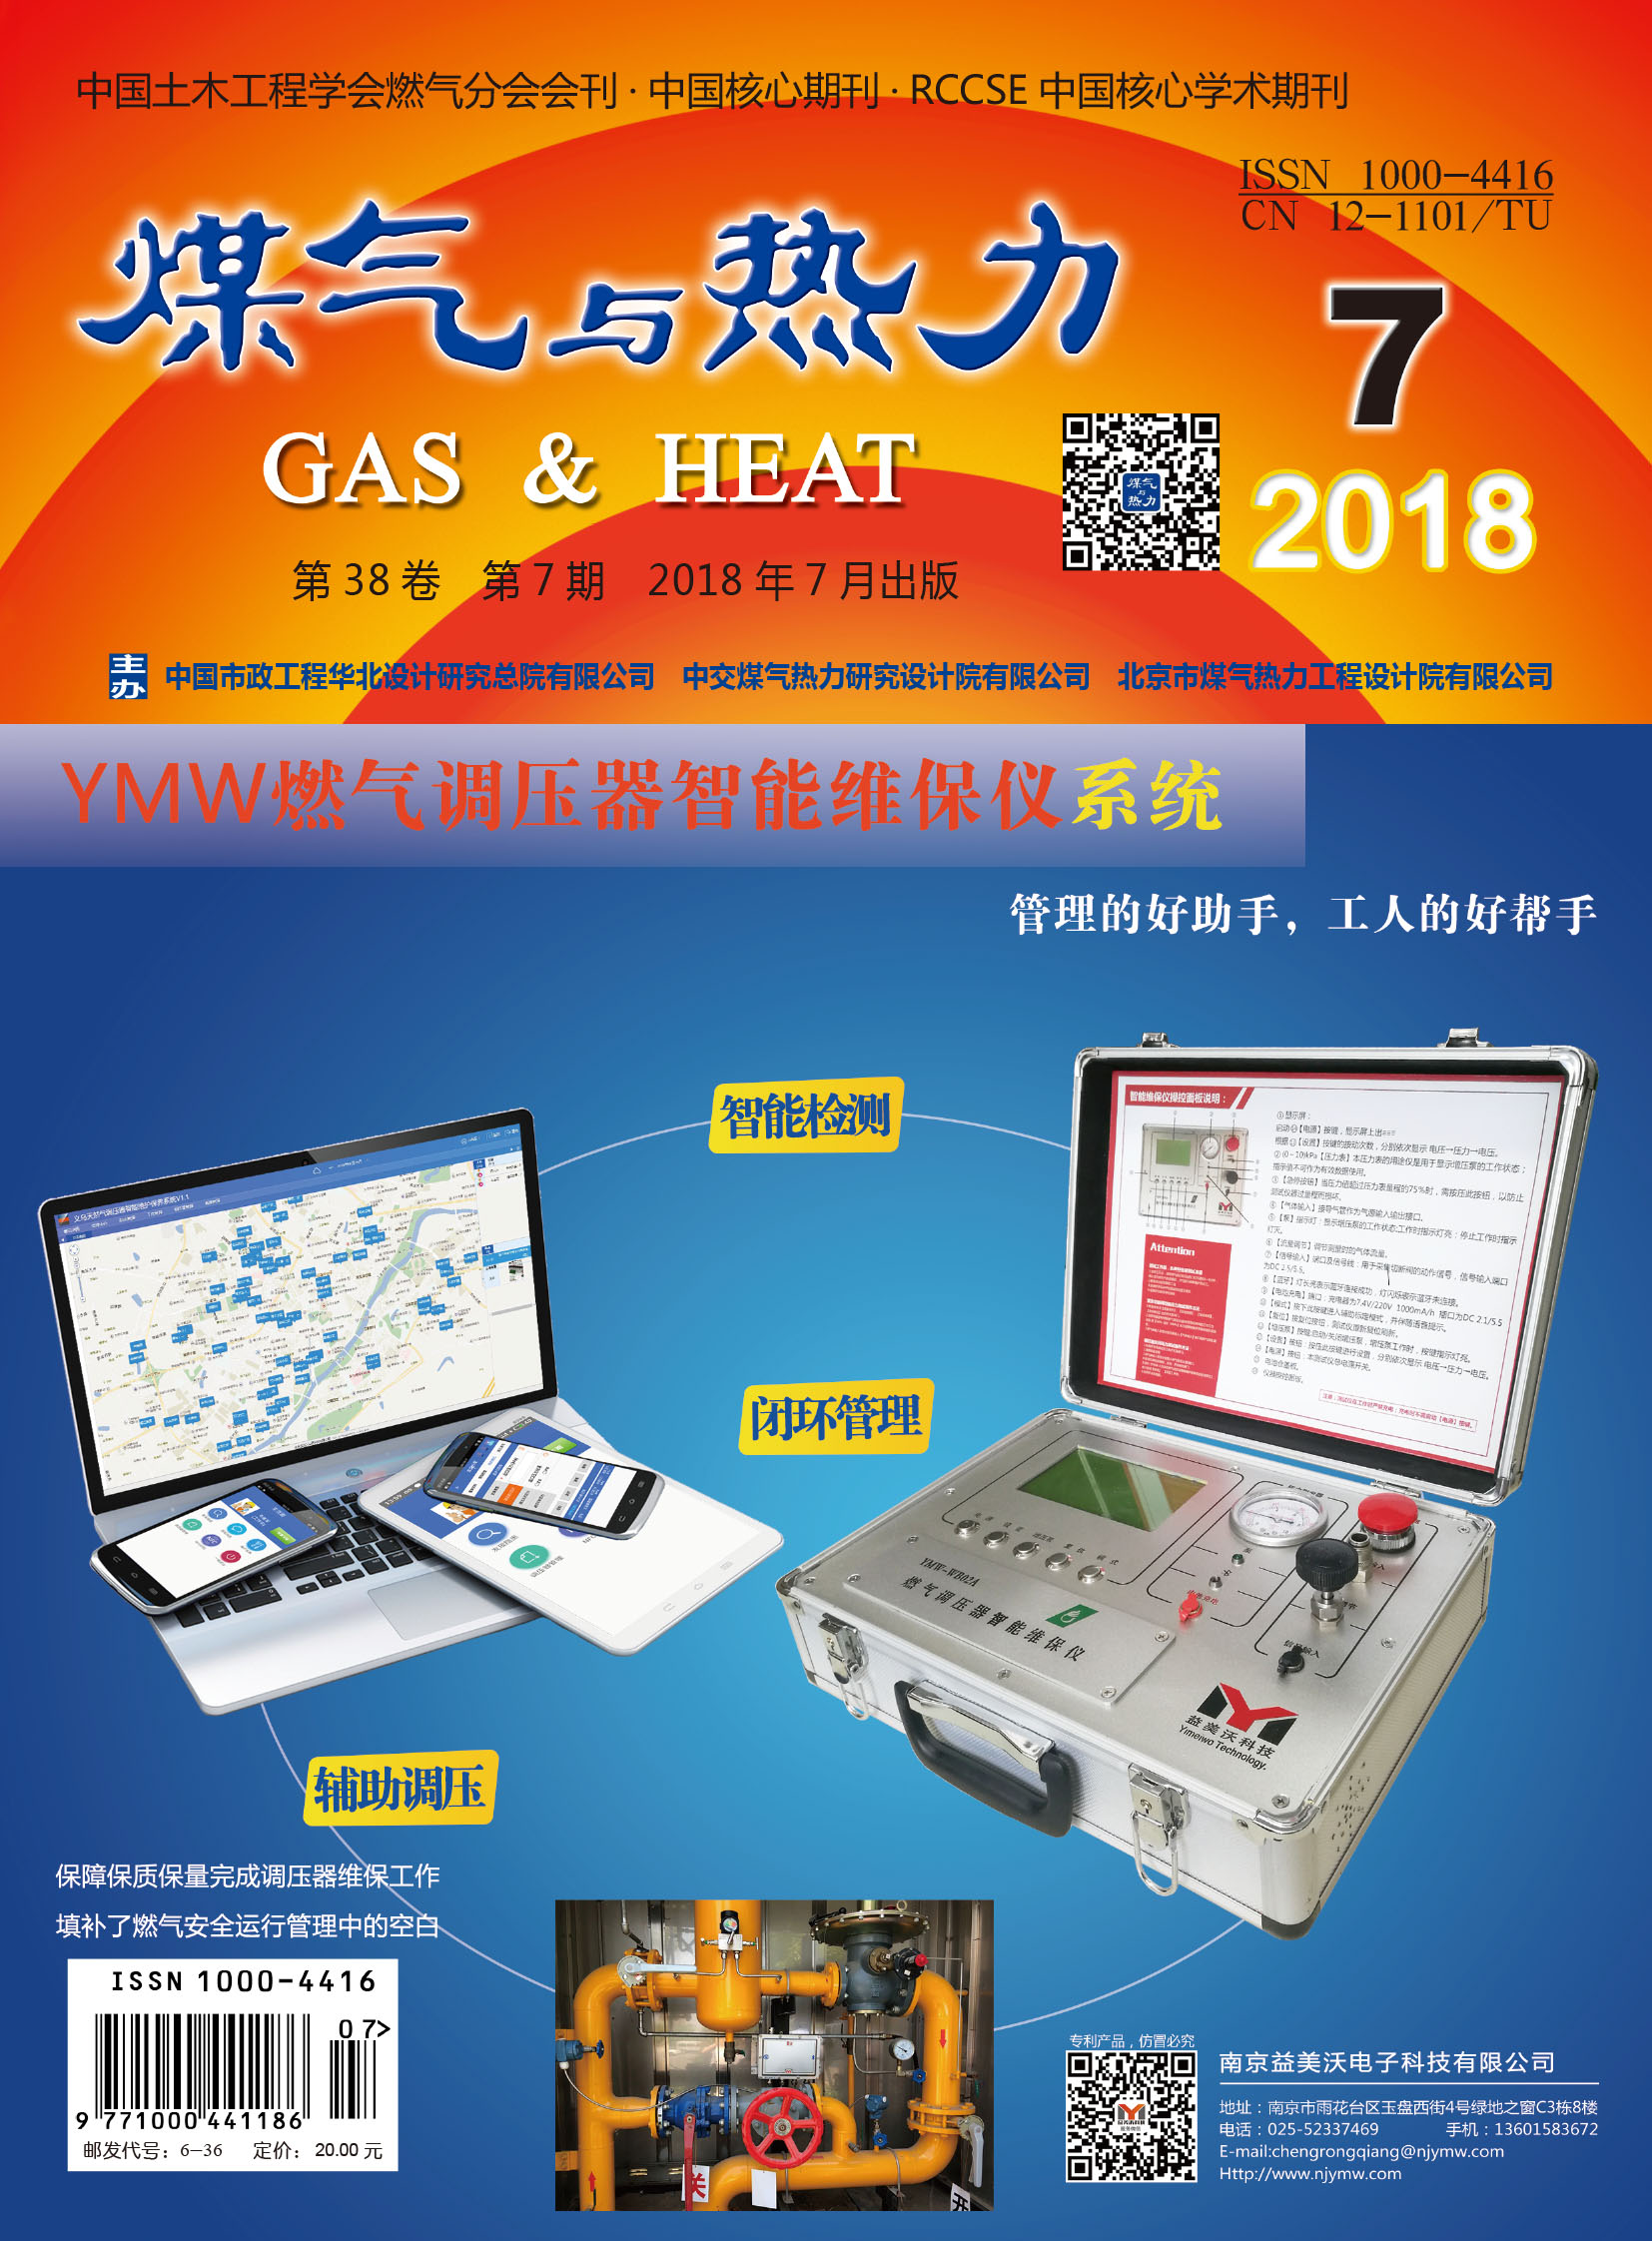 《煤气与热力》2018年7月刊